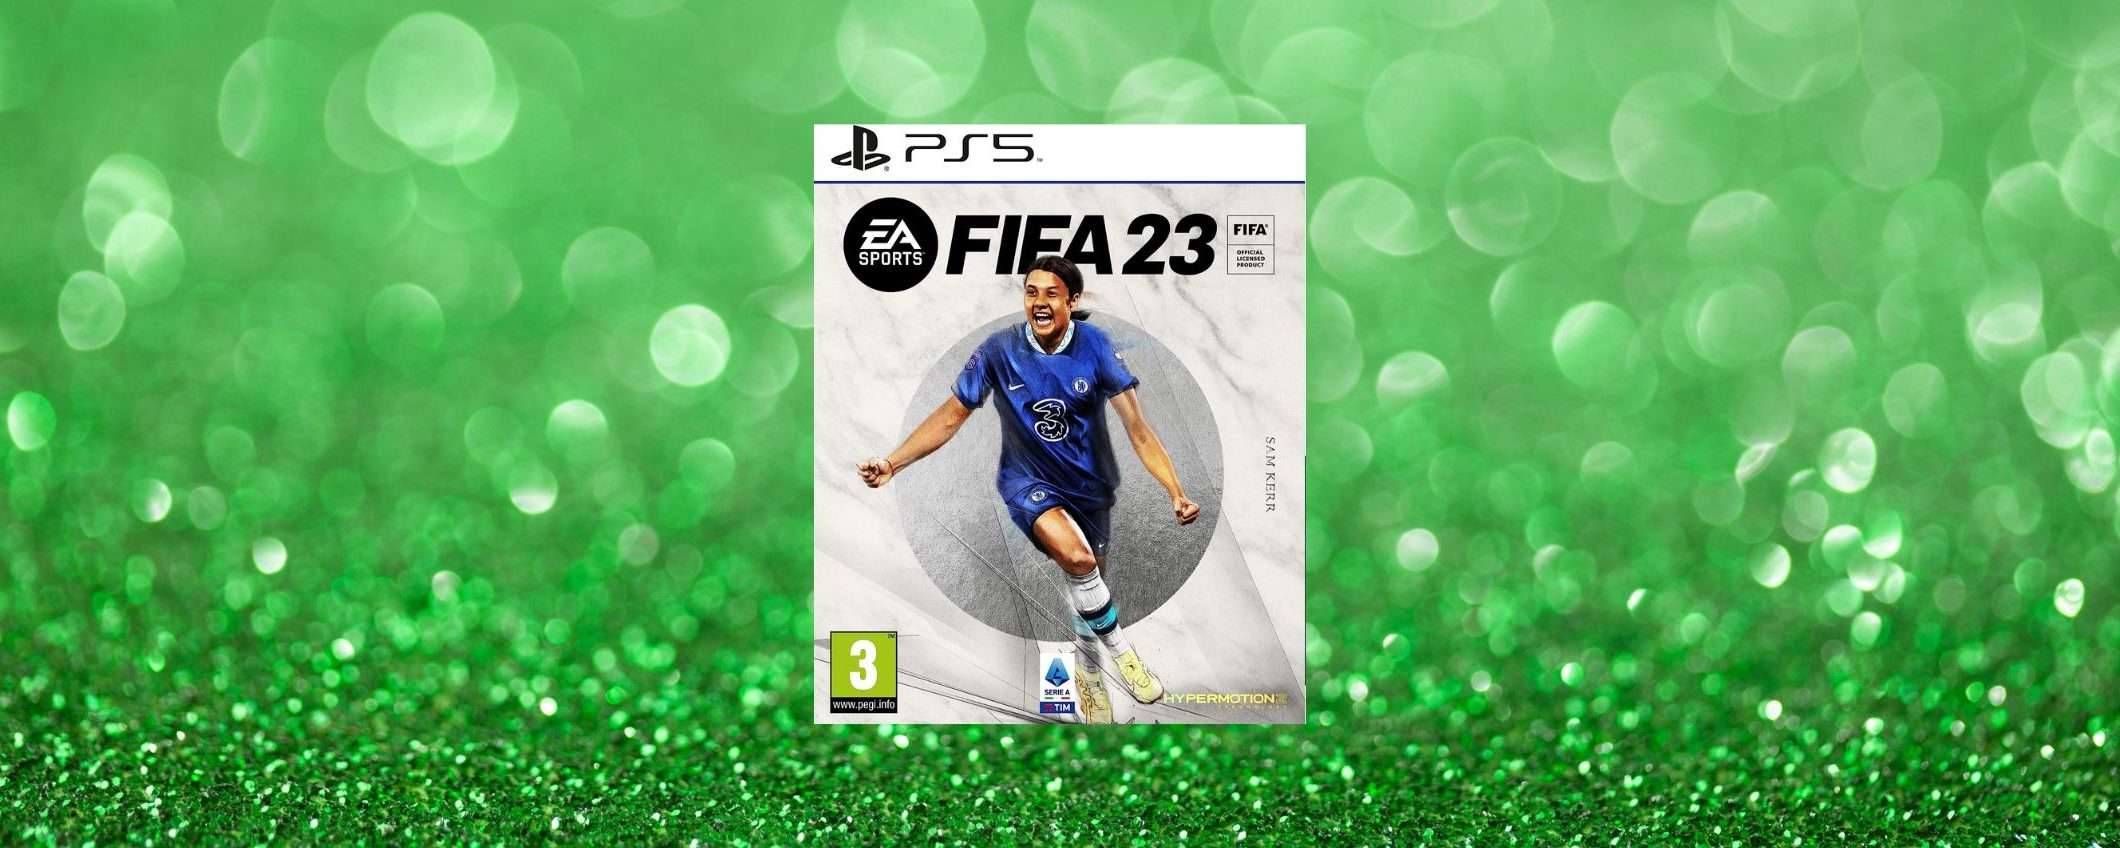 FIFA 23 PS5: lo SCONTO AMAZON è un regalo, costa solo 29€